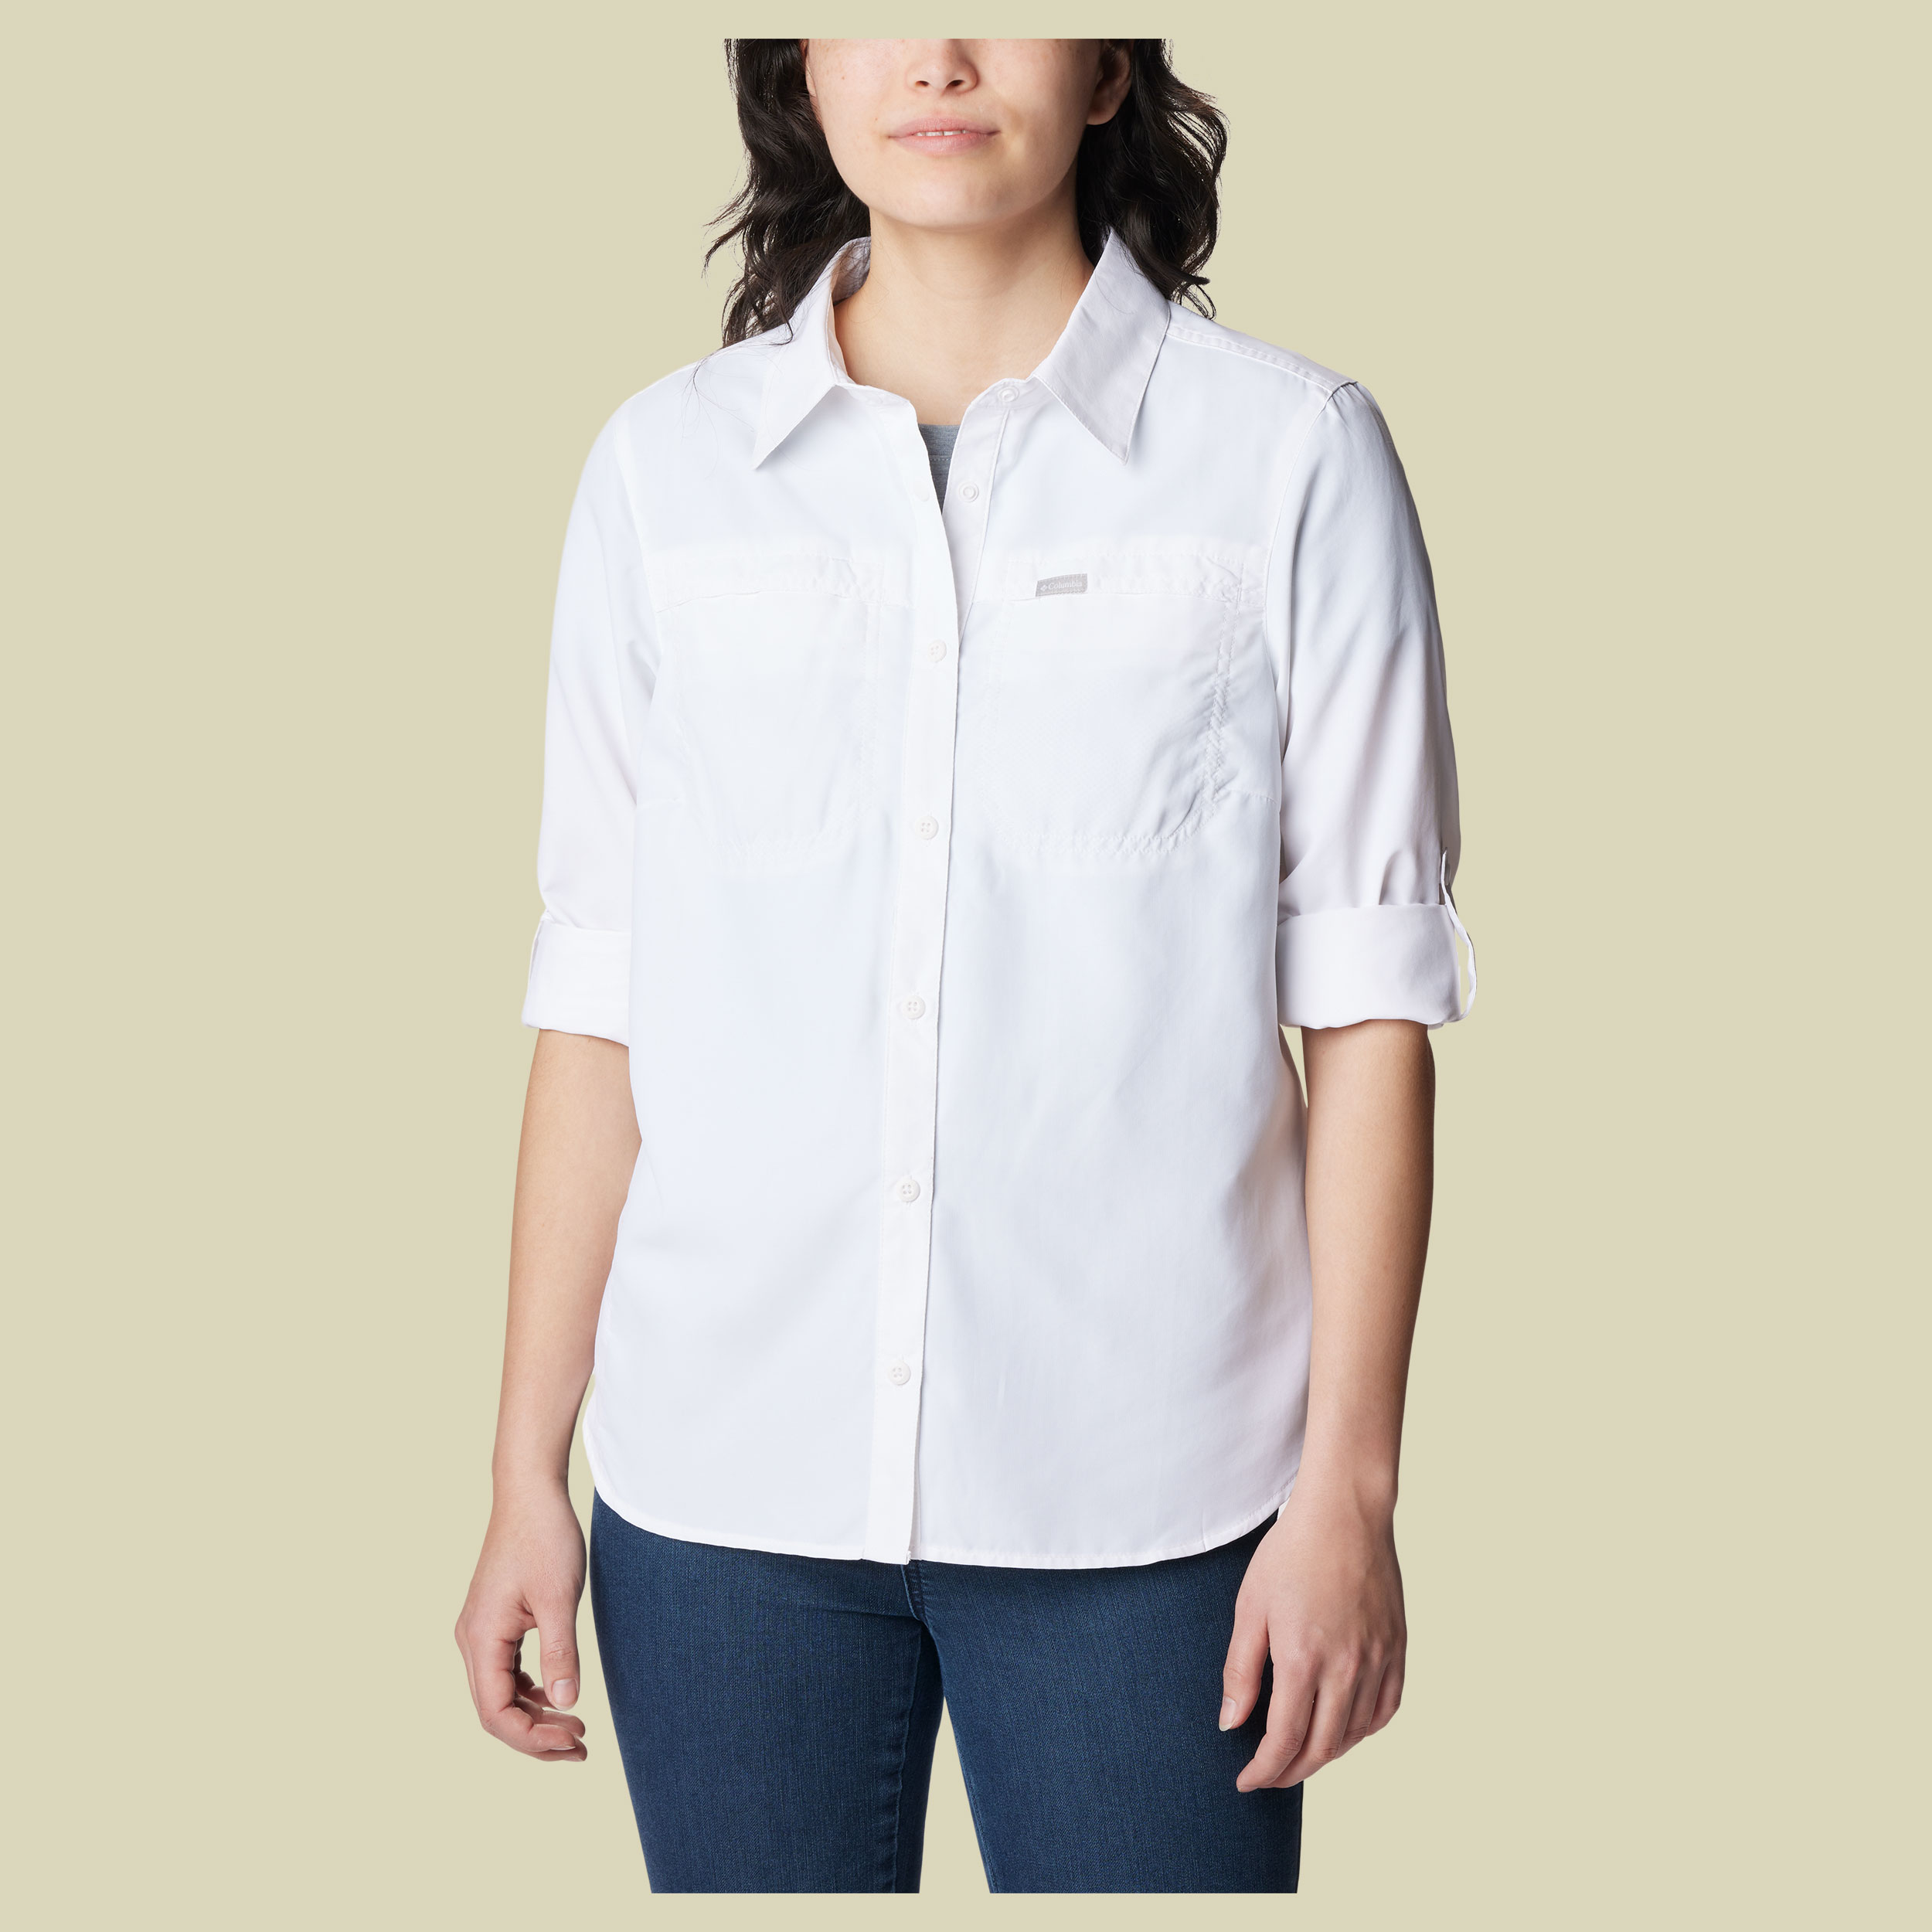 Silver Ridge 3.0 EUR Long Sleeve Shirt Women Größe XXL Farbe white